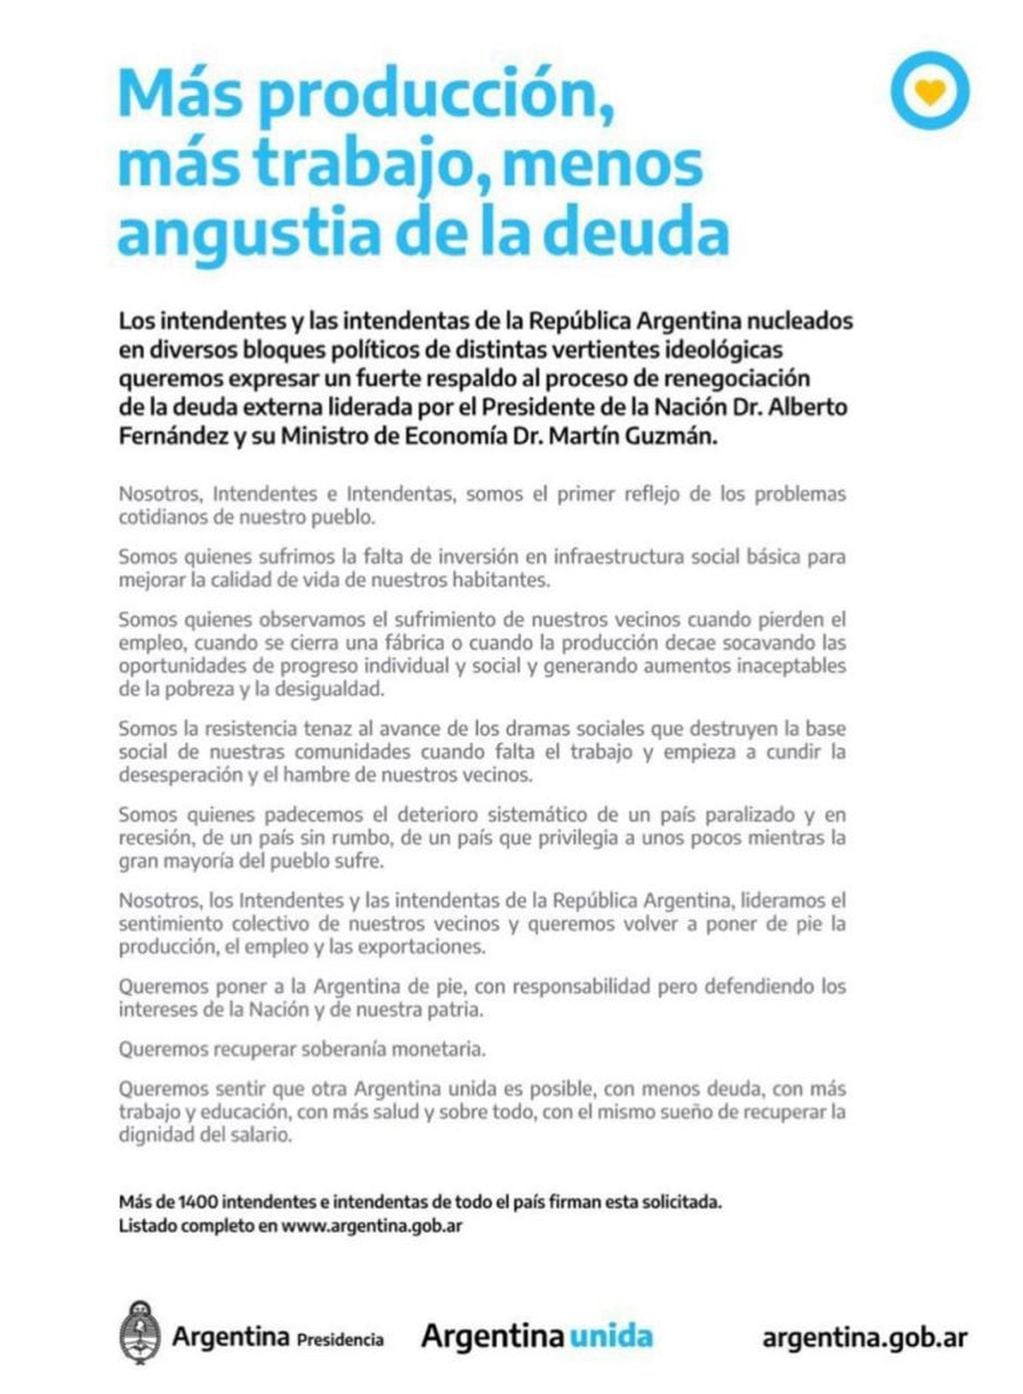 Apoyo de 1400 Intendentes de Argentina a la renegociación de deuda externa.